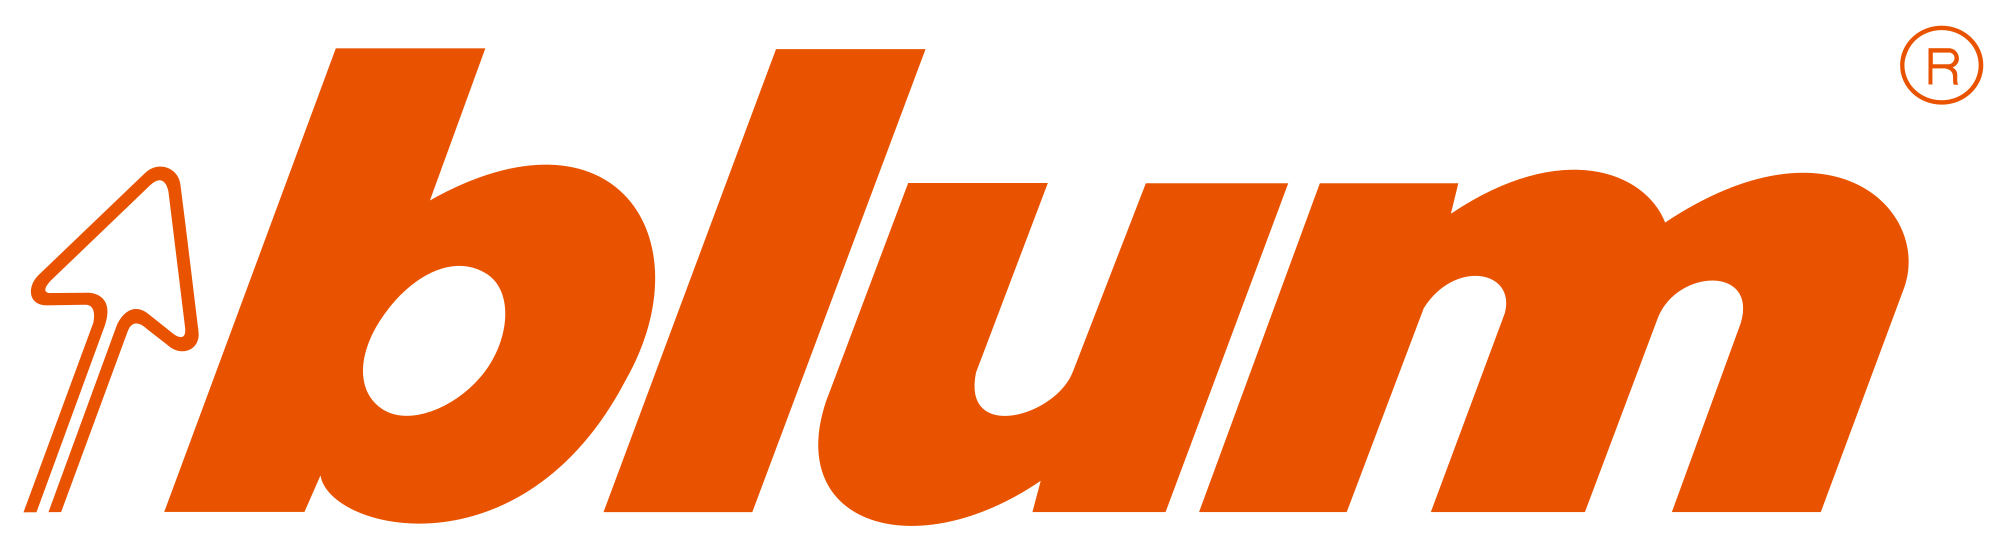 Julius Blum Logo.